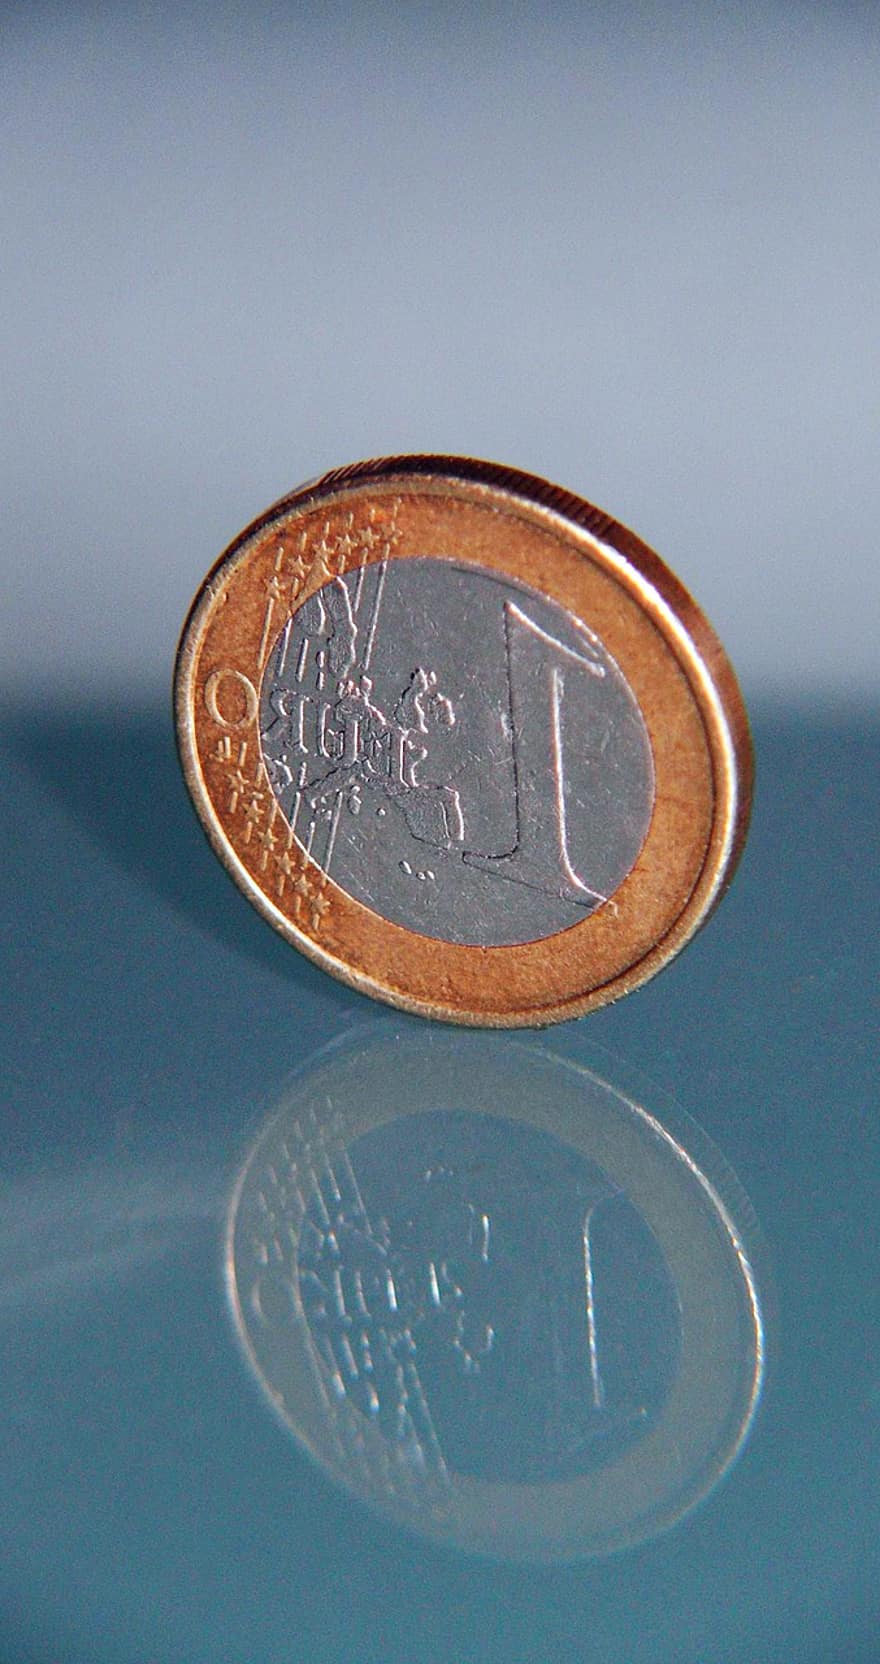 євро, монета євро, монета, фінанси, валюта, заощадження, інвестиції